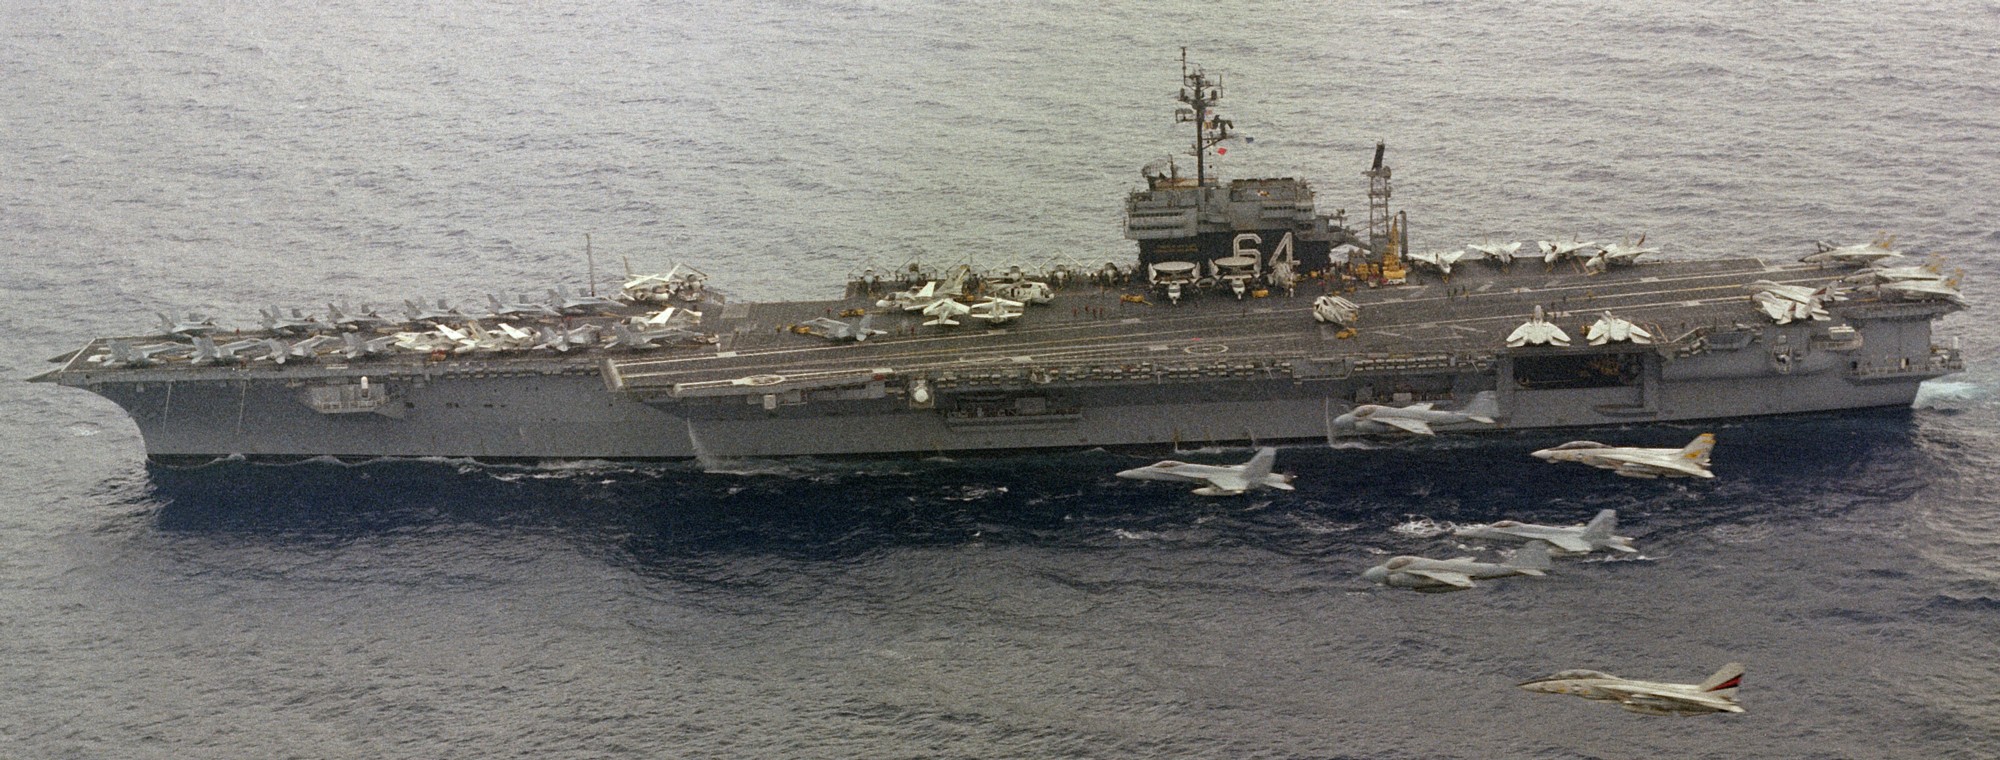 cv-64 uss constellation kitty hawk class aircraft carrier air wing cvw-14 us navy 78